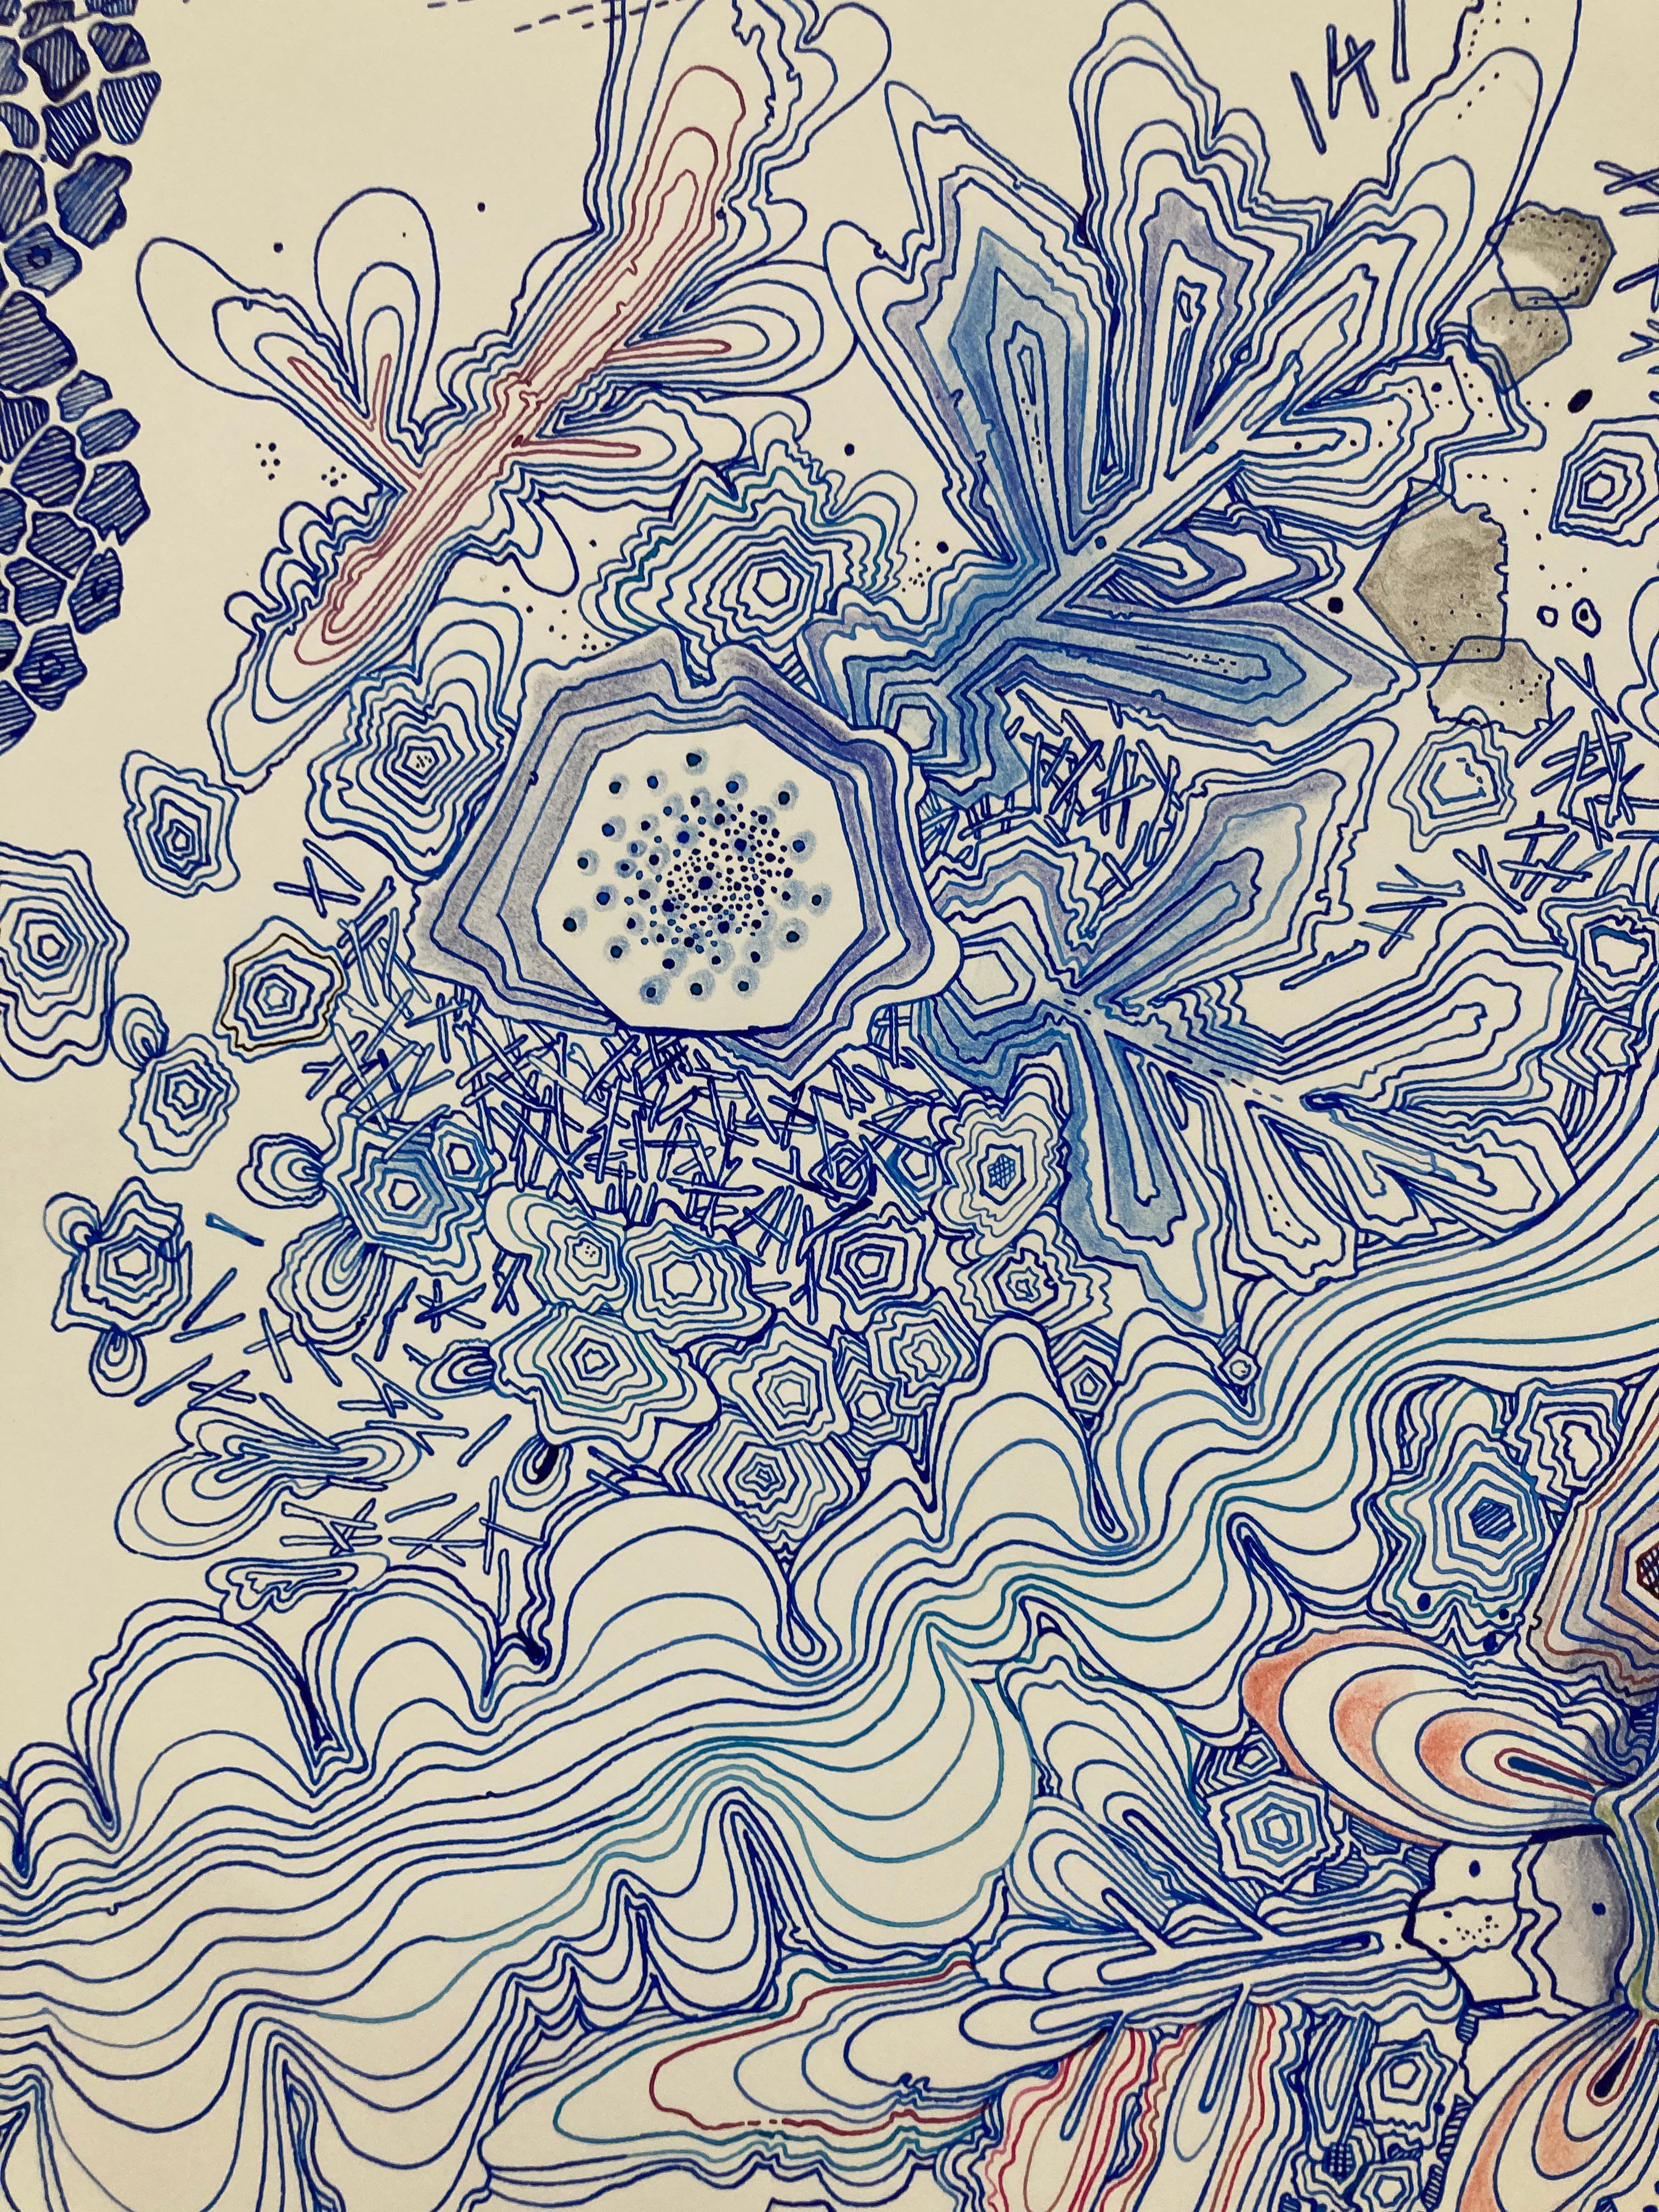 River, Indigo Blue, Navy, Cobalt, Salmon Pink, Red Snowflake Pattern Drawing - Contemporary Art by Sarah Morejohn